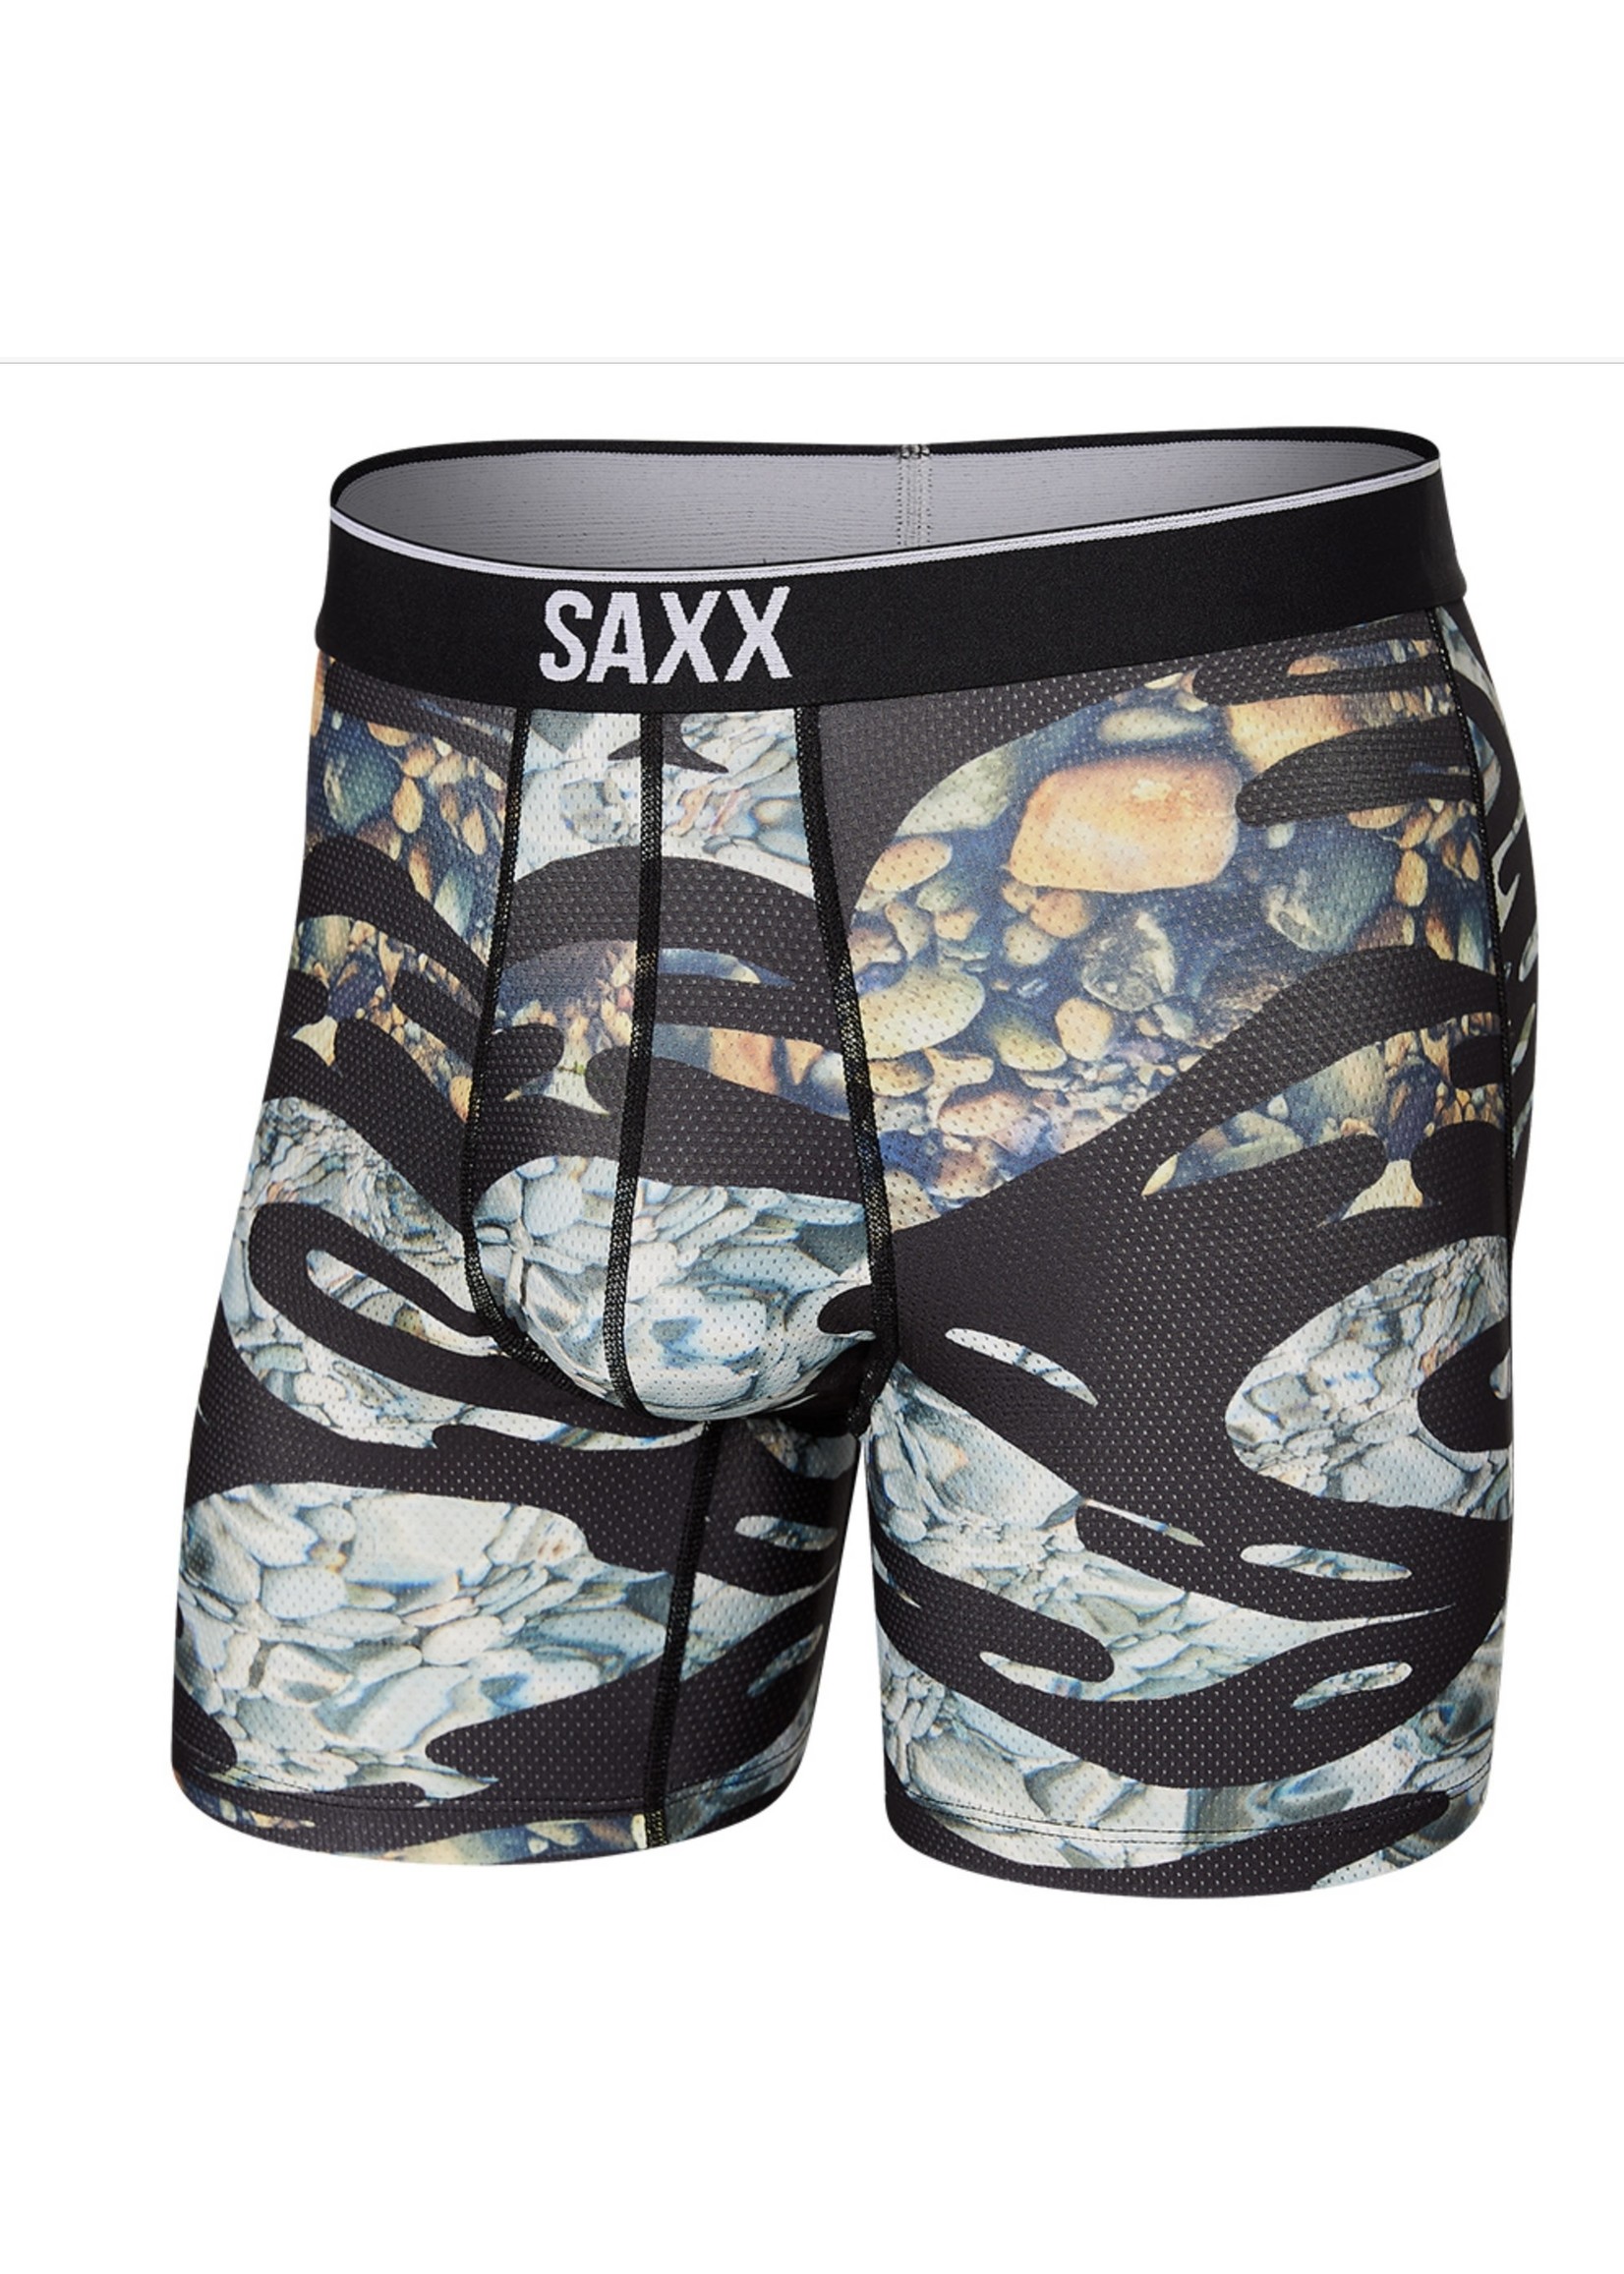 Volt Boxer Brief by Saxx Underwear